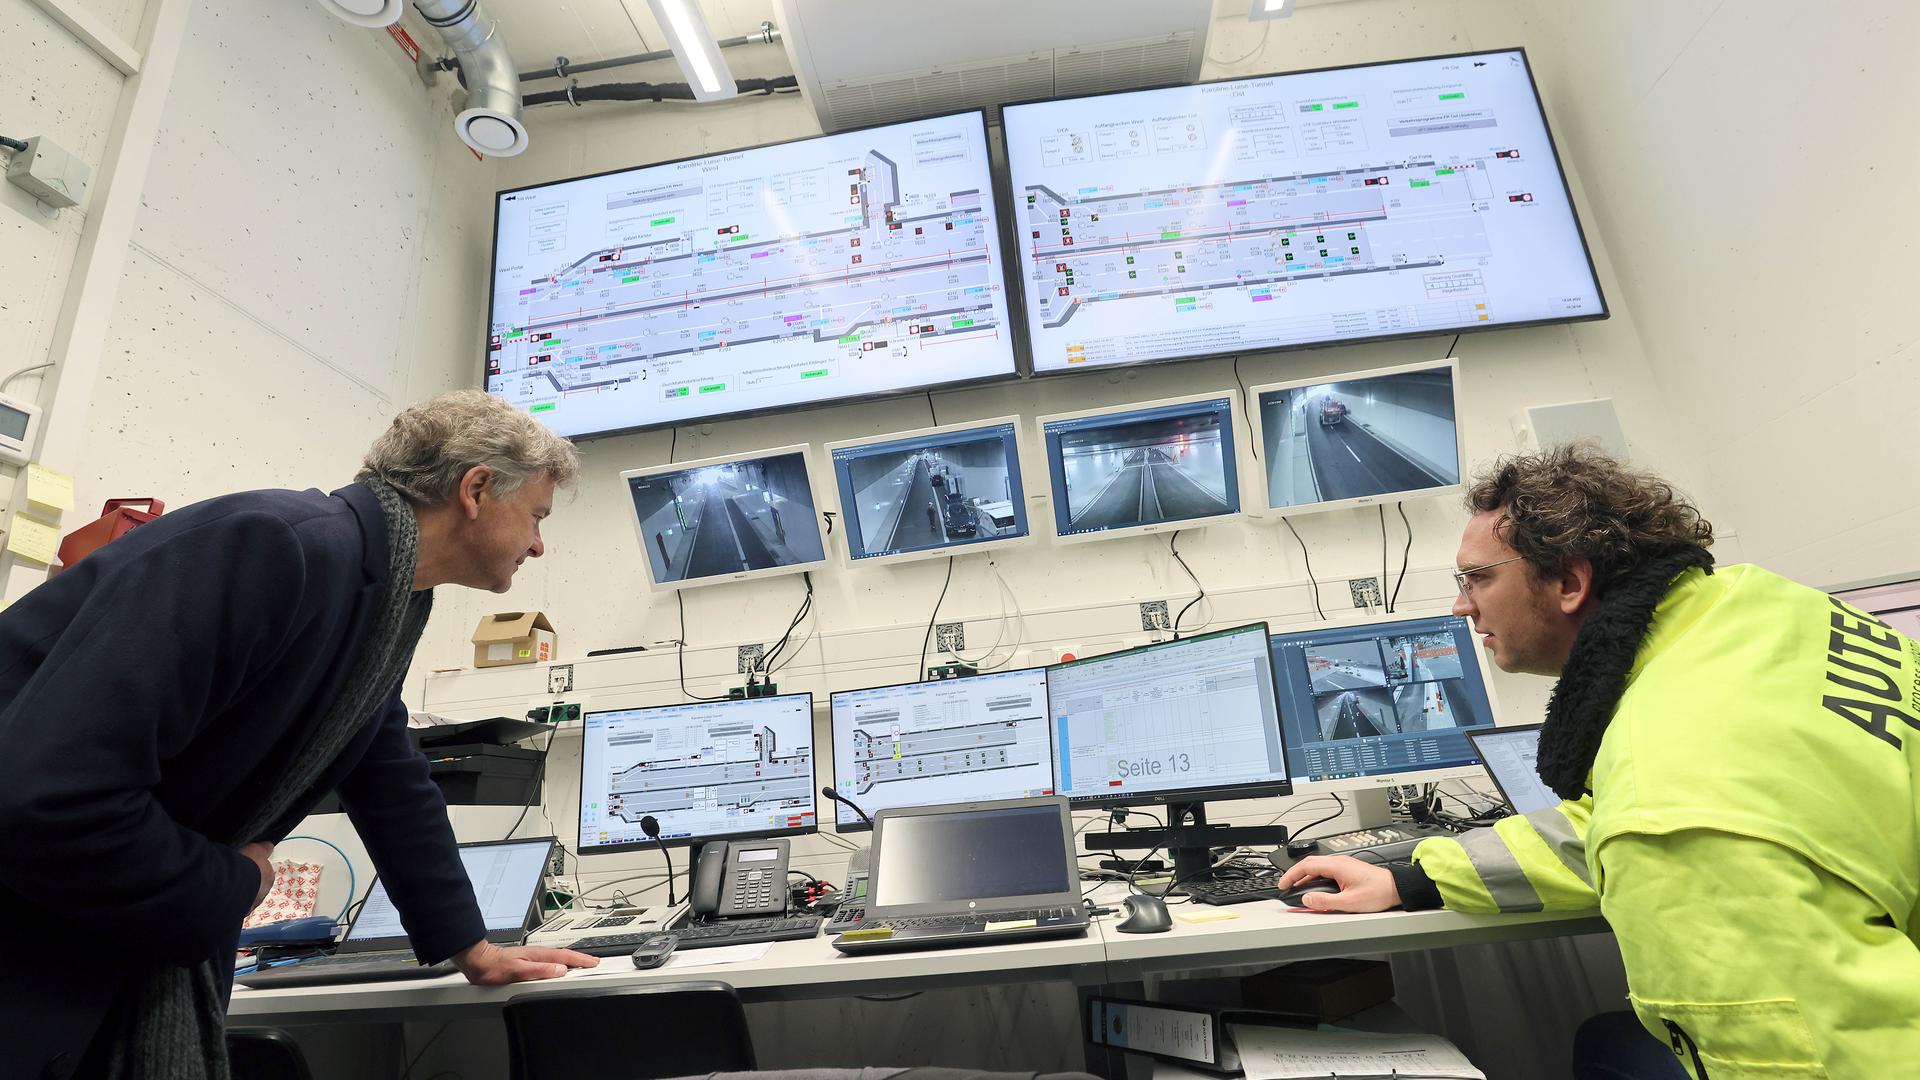 Tunnel-Leitstand: Oberbürgermeister Frank Mentrup (links) informiert sich bei Programmierer Johannes Seefluth über die komplexe Digitaltechnik unter Tage.